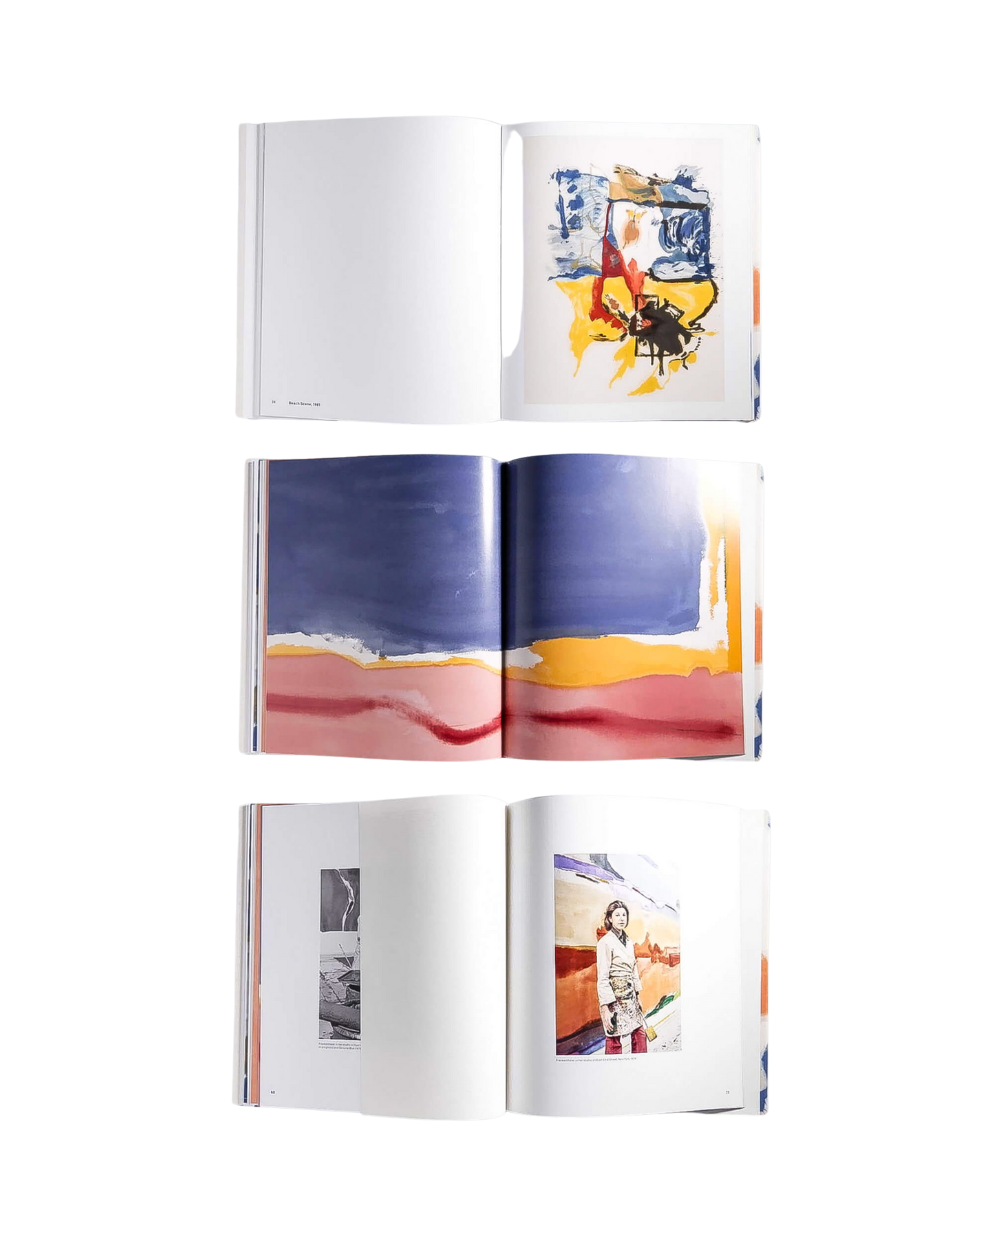 Imagining Landscapes: Paintings by Helen Frankenthaler